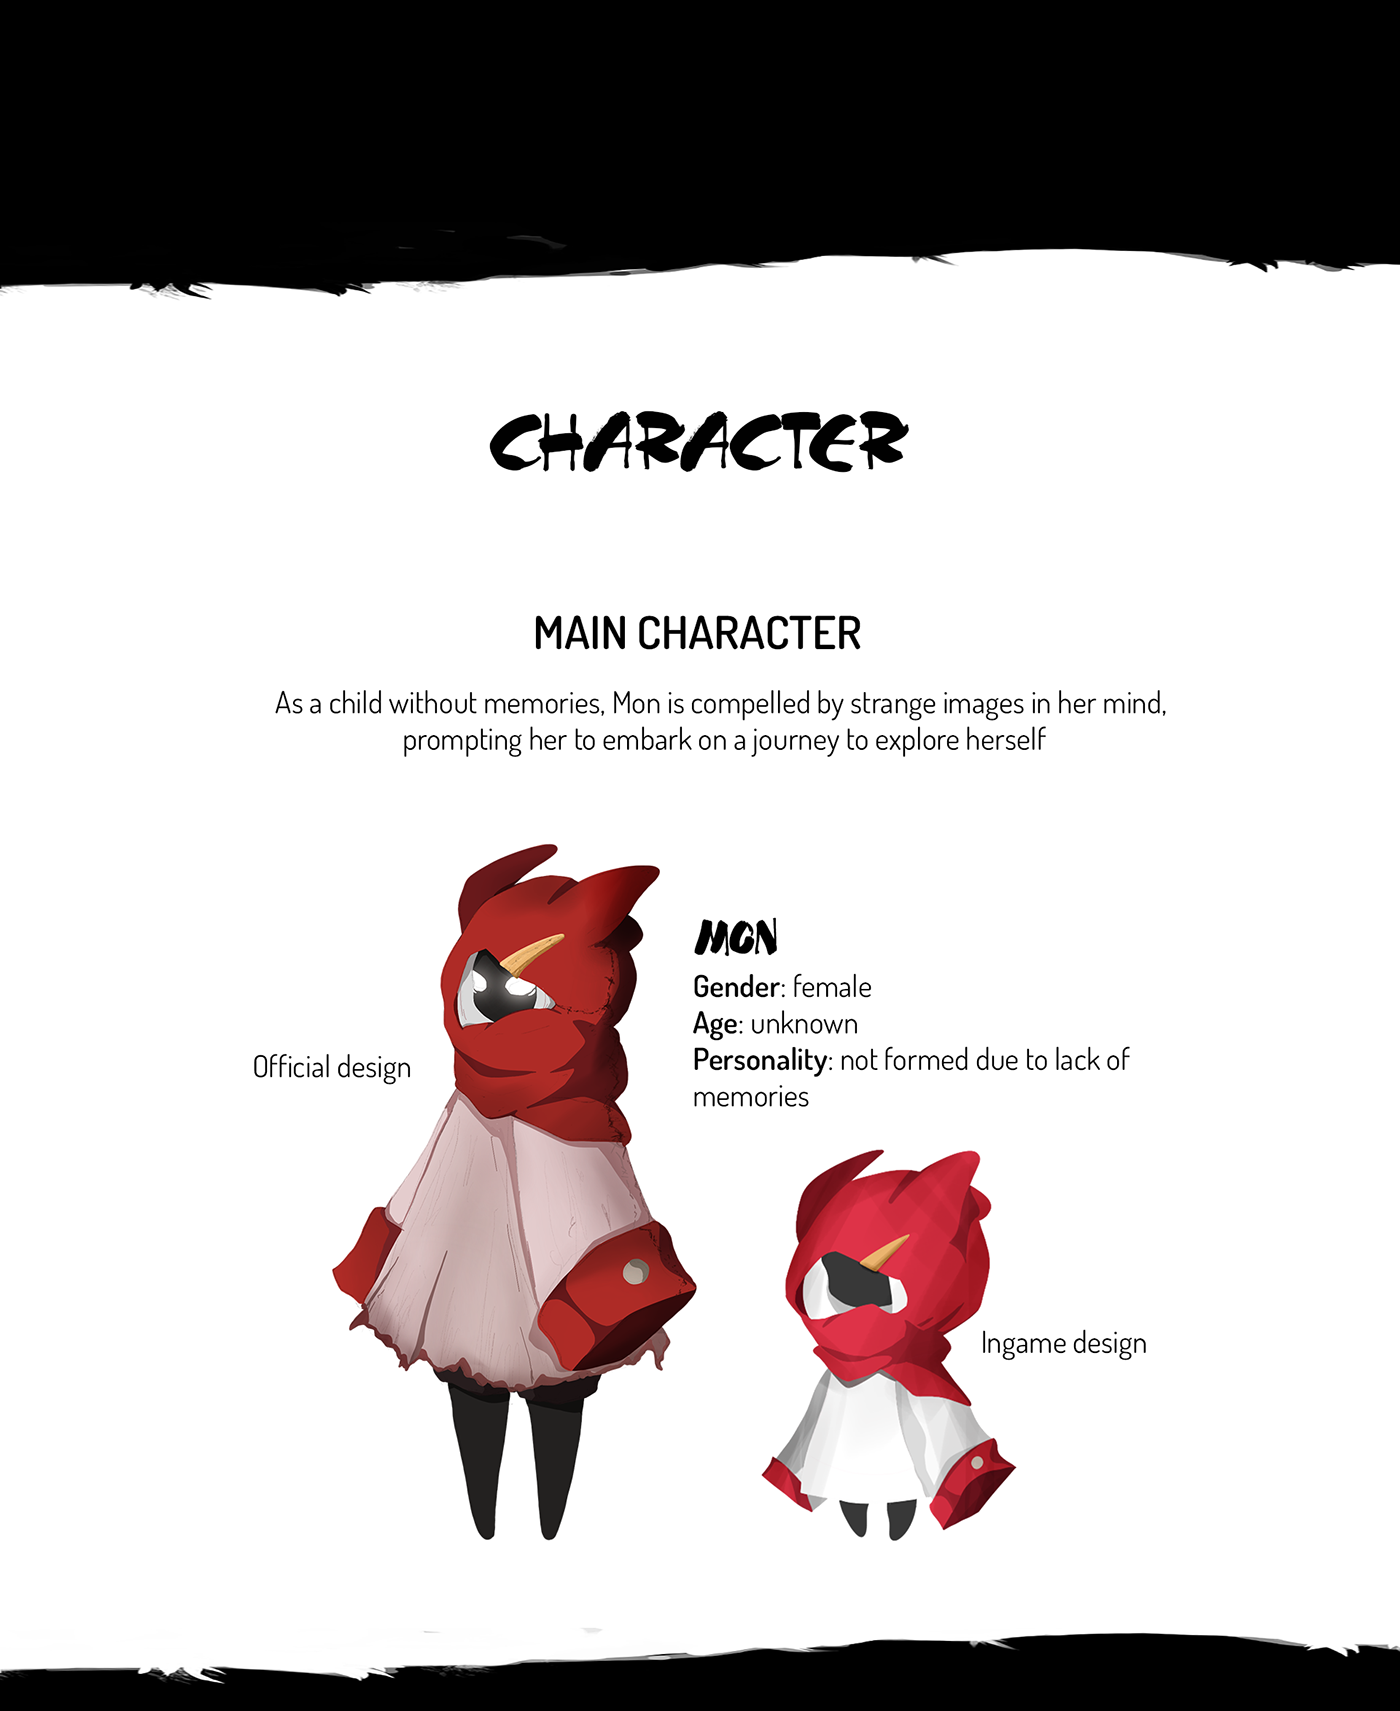 game design  concept art Character design  game 2D ILLUSTRATION  animation  Digital Art  fantasy digital illustration